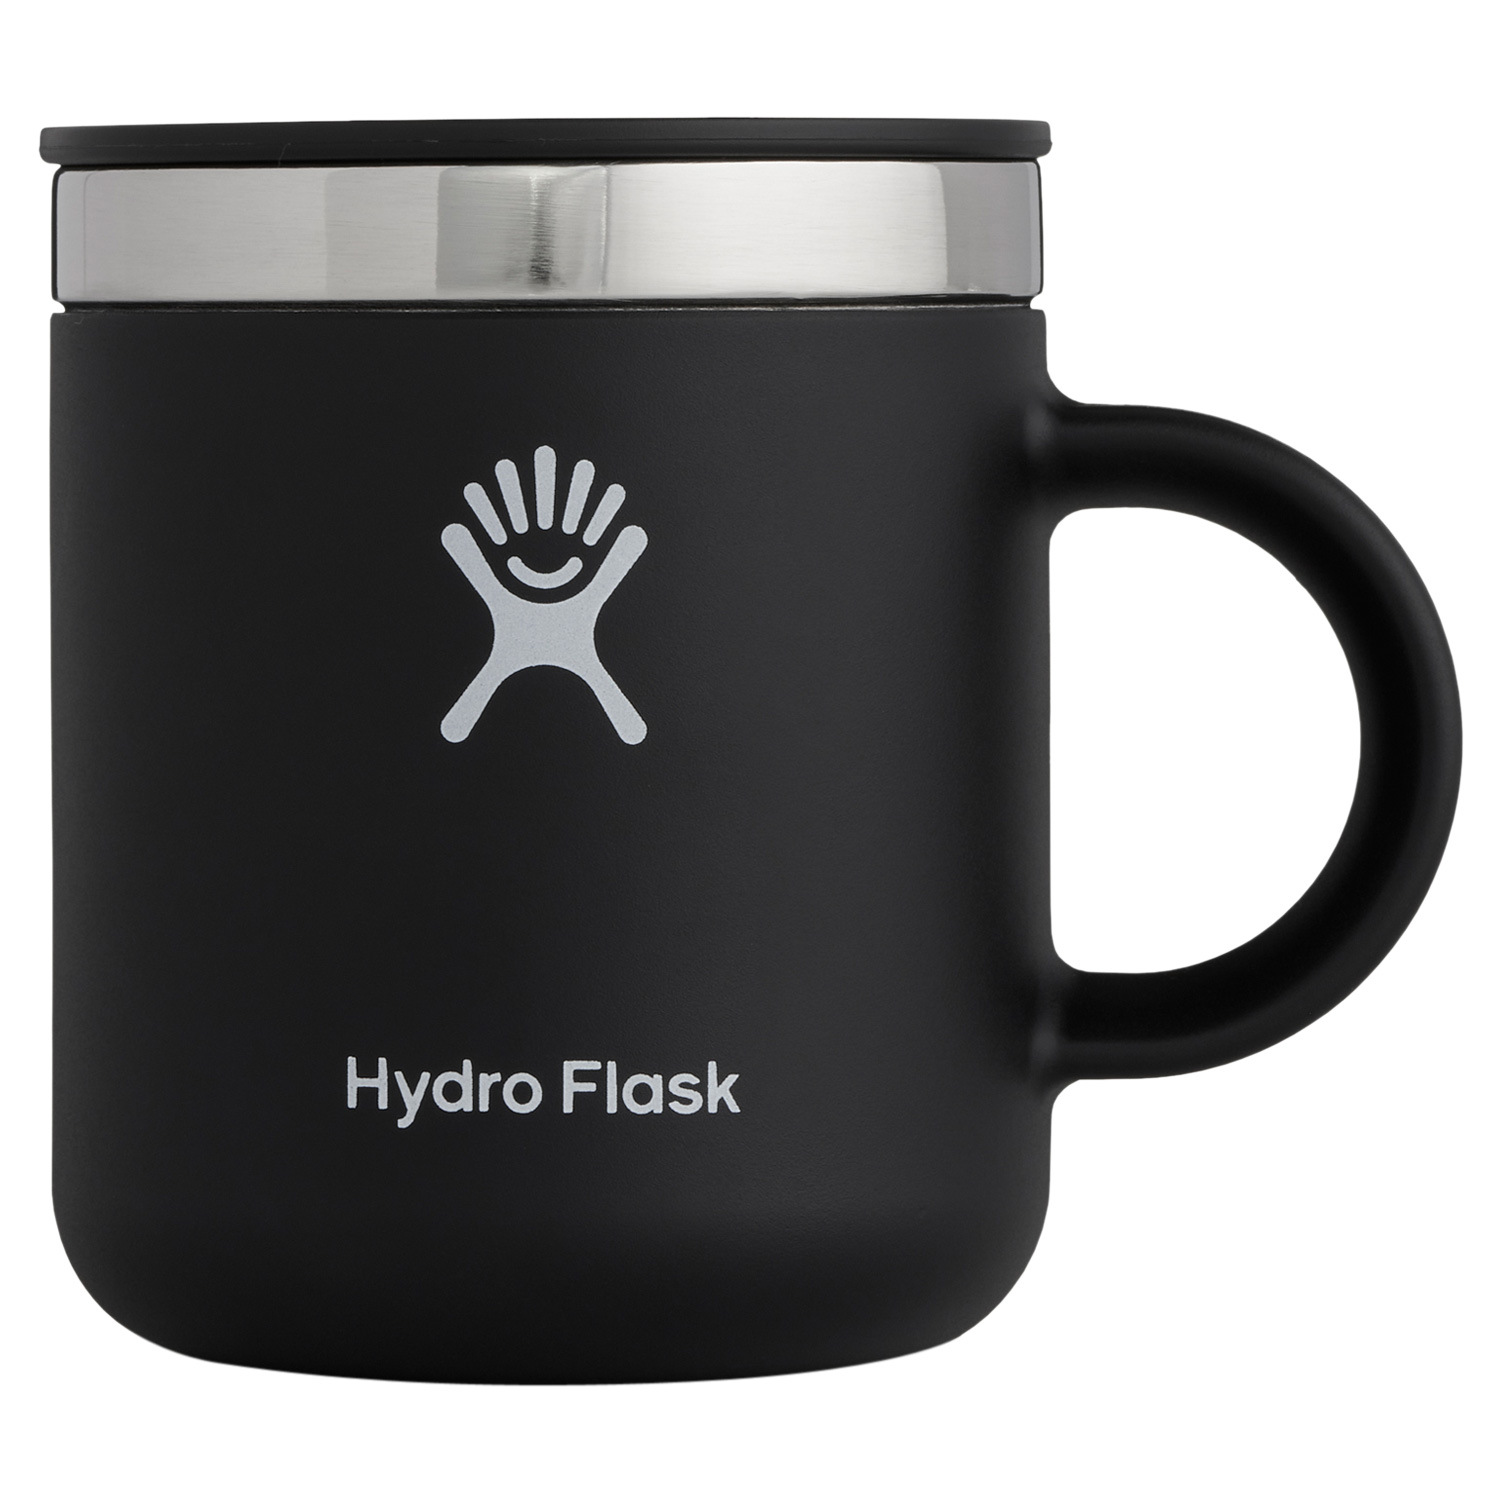 ハイドロフラスク Hydro Flask 6oz コーヒーマグ マグカップ コーヒーカップ 177m...